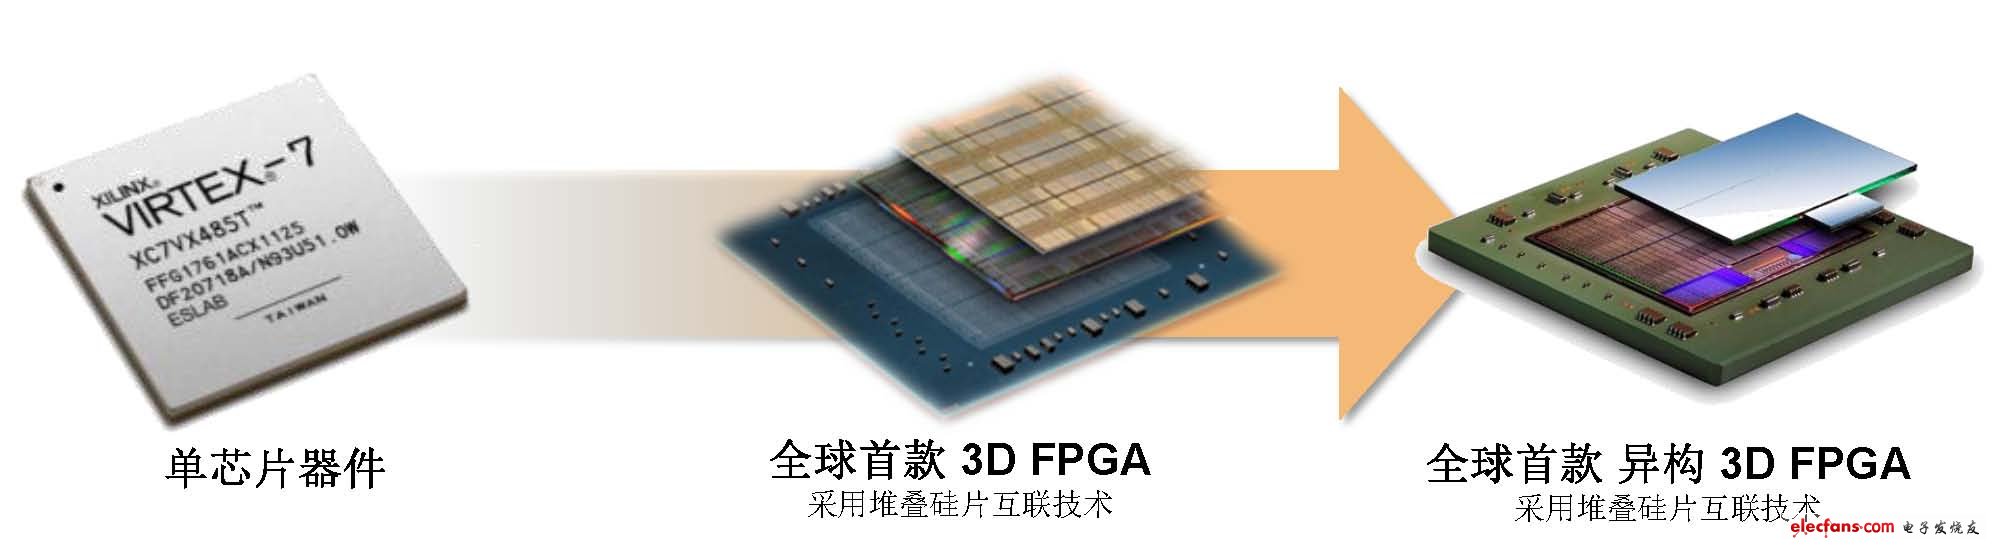 深入阐述全球首款异构3D FPGA芯片,第2张